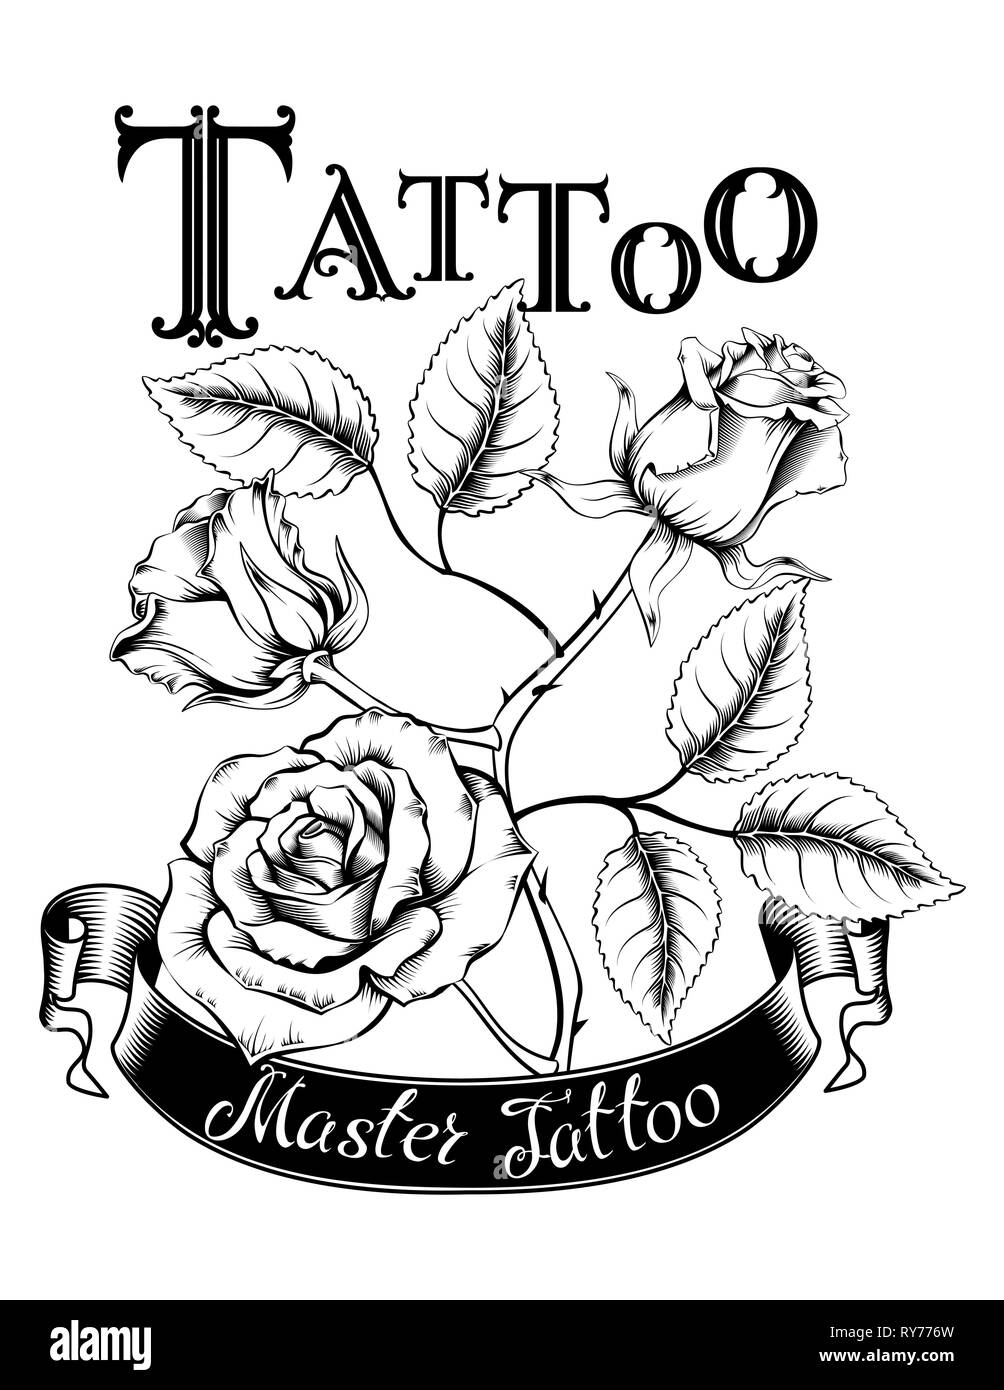 Hand drawn vector illustration du logo tatouage avec des roses et des feuilles. Idéal pour des invitations, cartes de vœux, des citations, des tatouages, des textiles, des blogs, des affiches, Illustration de Vecteur